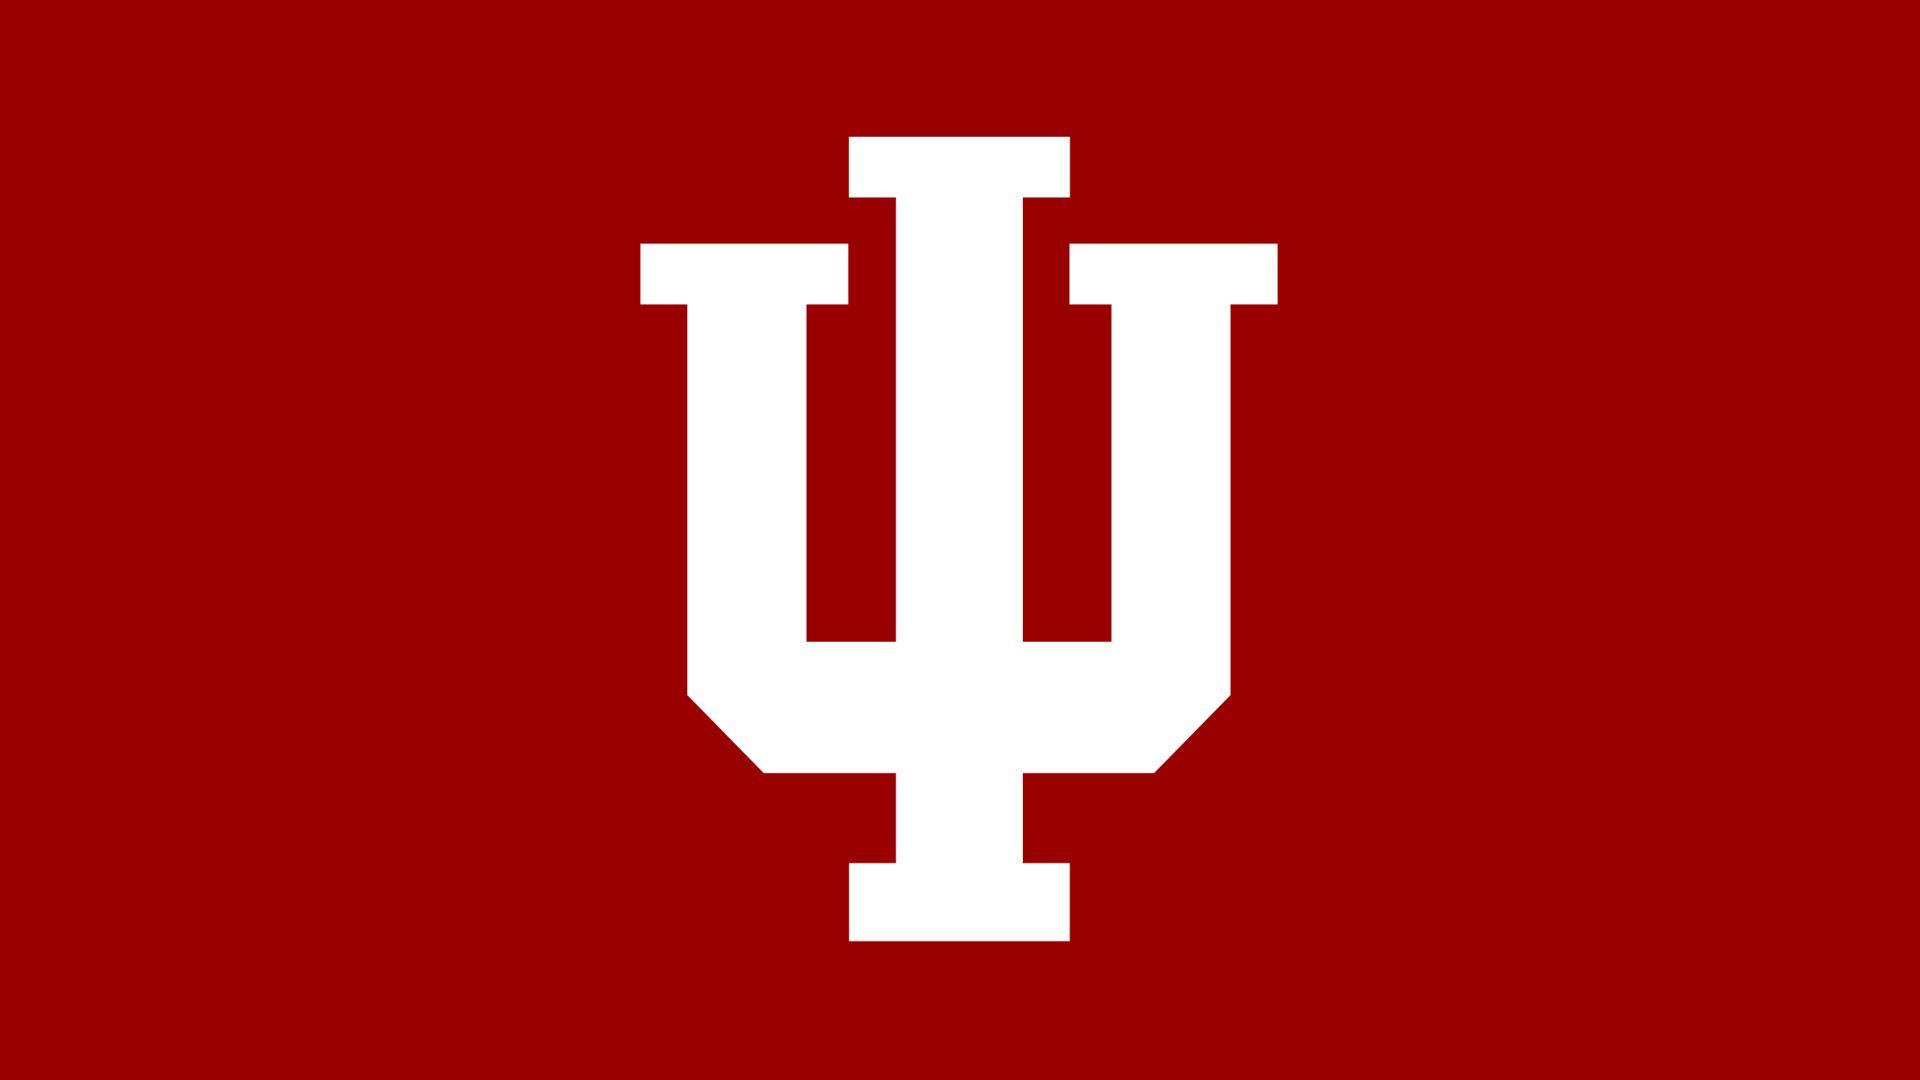 Indiana University Logo - 2018 IU Invitational Information - Indiana University Athletics